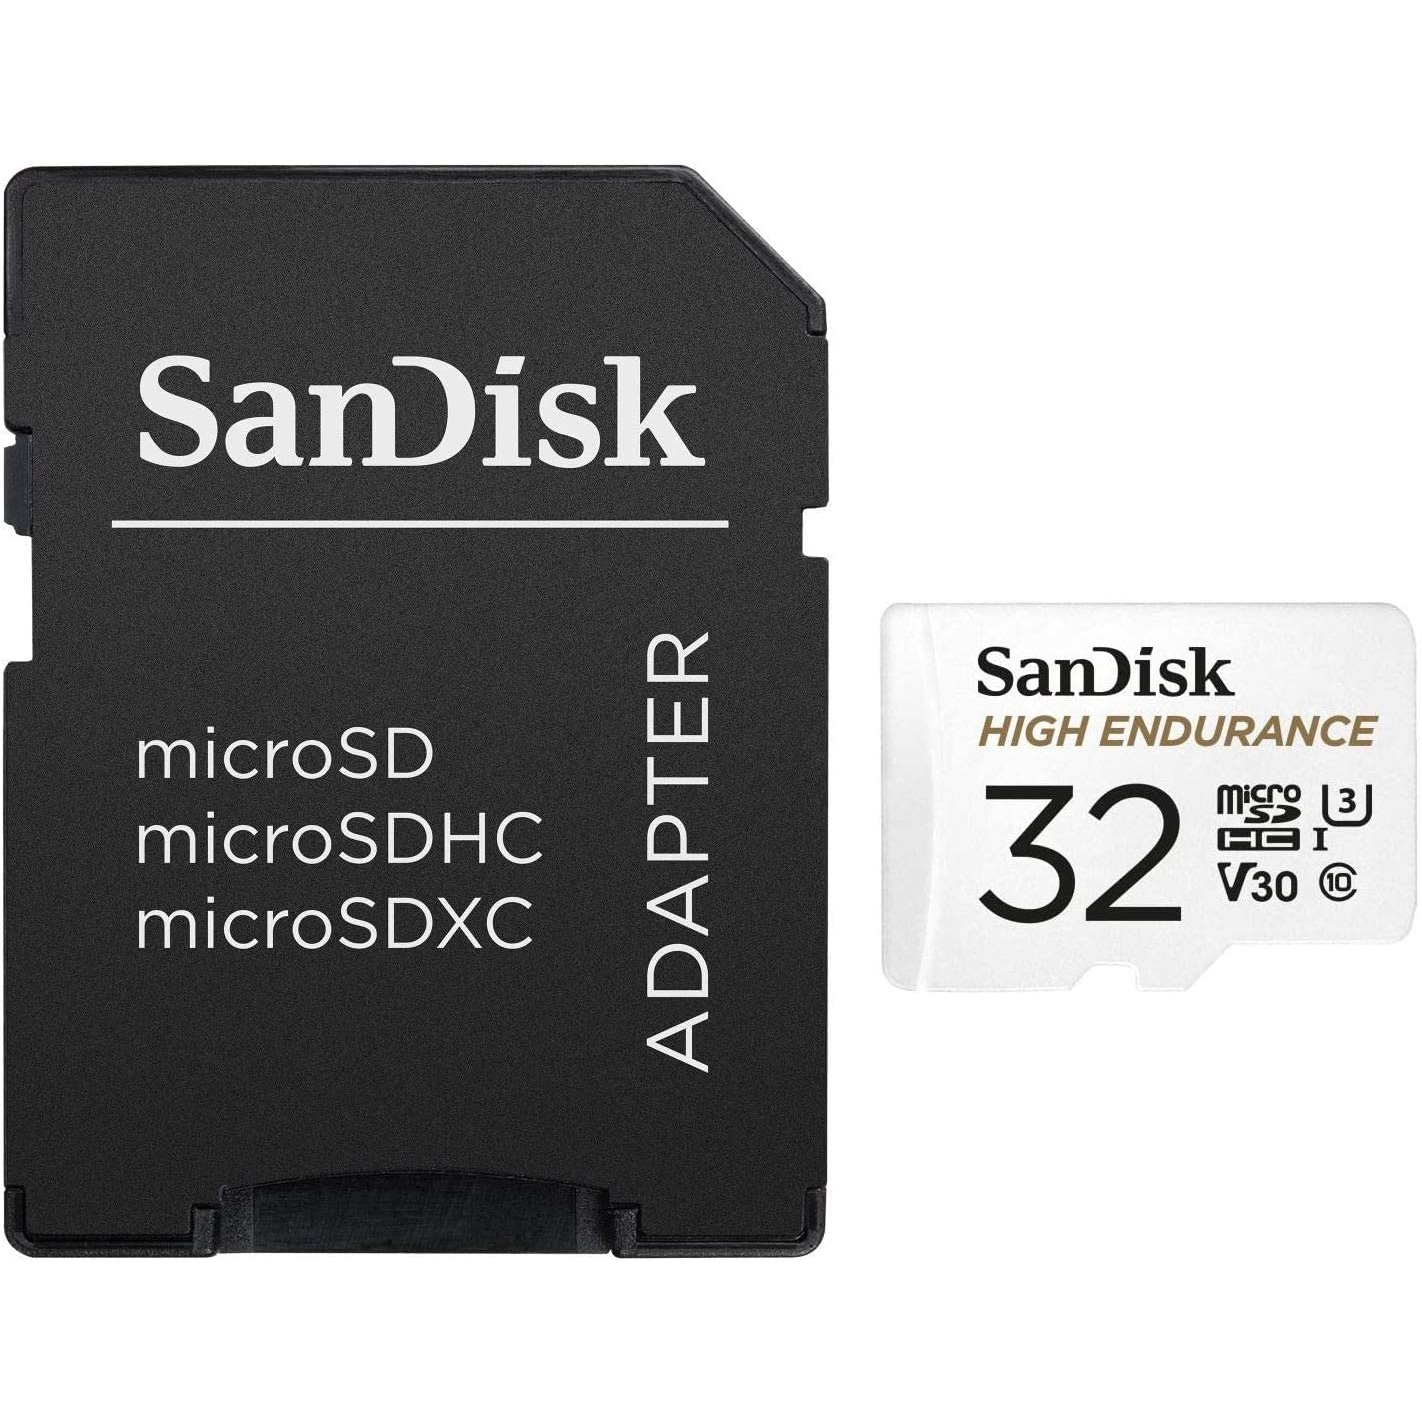 SanDisk Tarjeta de memoria 32GB MicroSD High Endurance Clase 10 Especializada para Video Vigilancia y Dash Cams